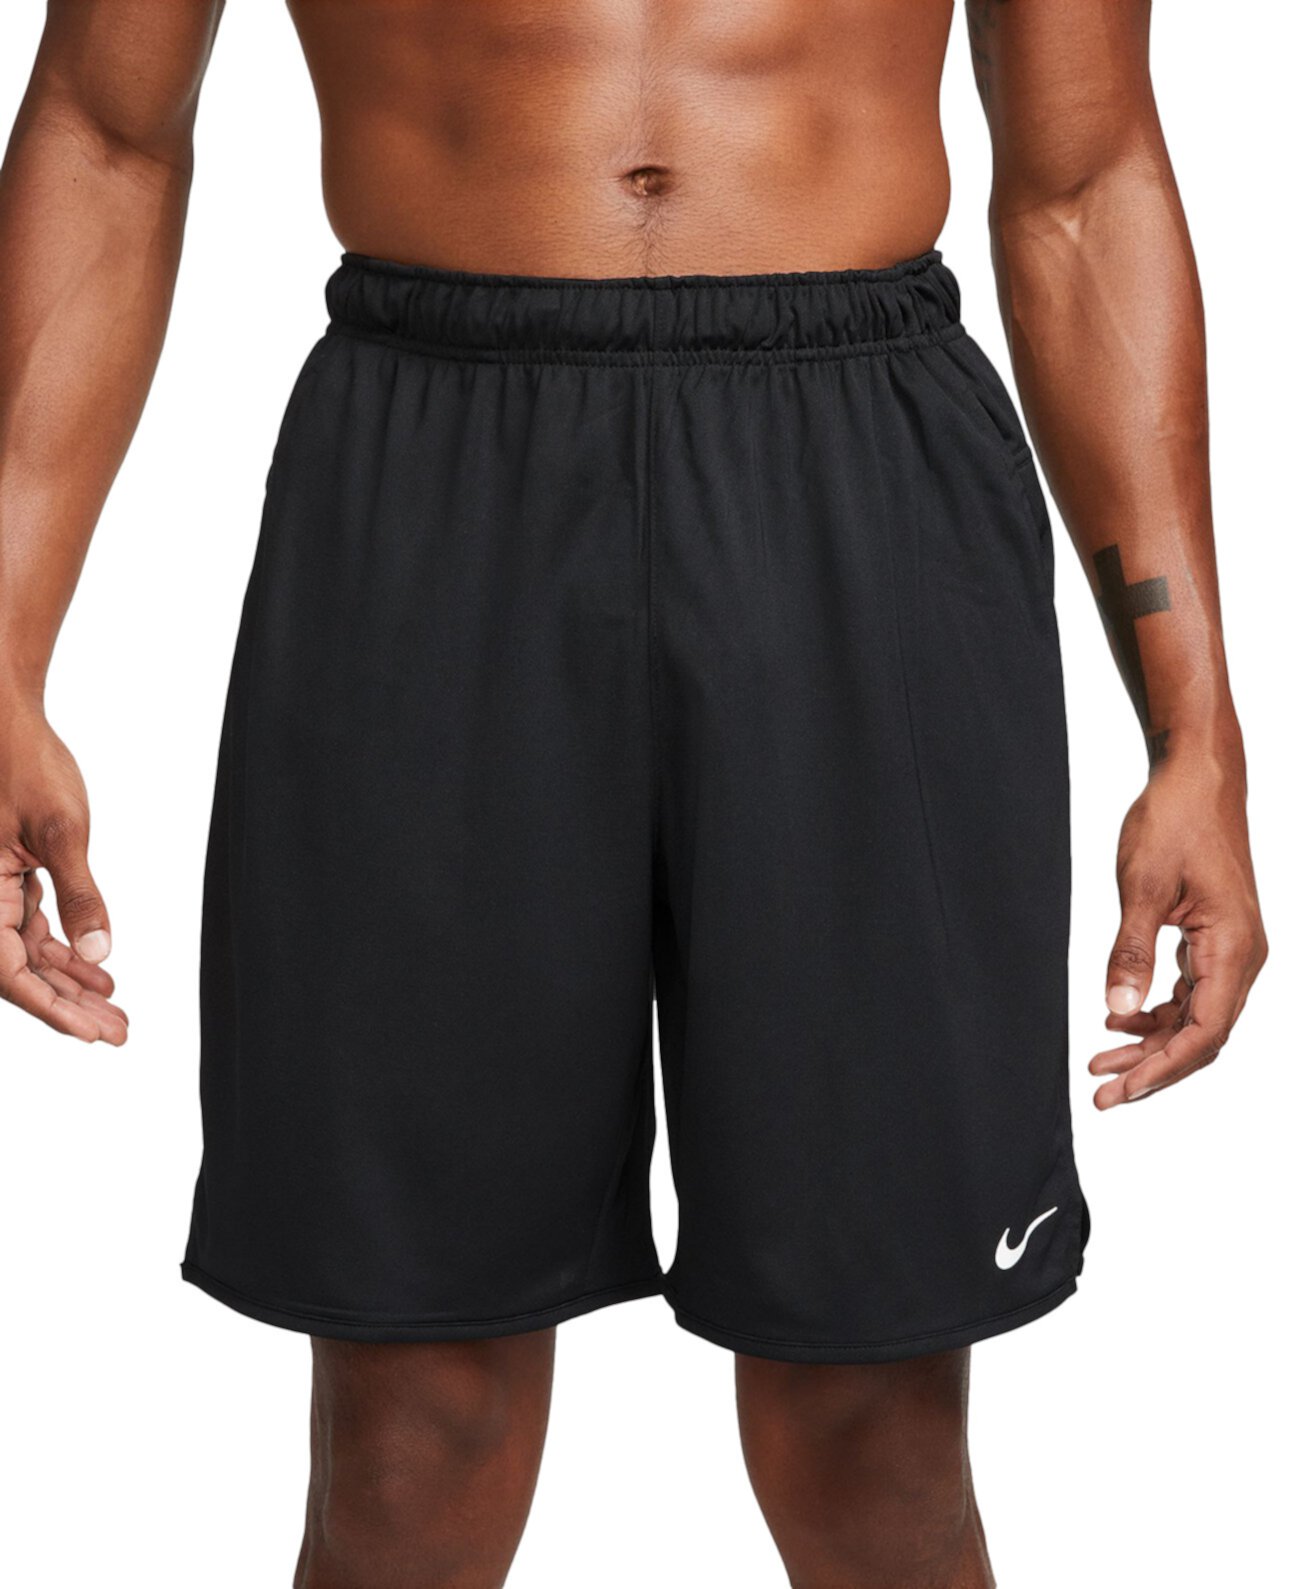 Мужские универсальные шорты Totality Dri-FIT без подкладки длиной 9 дюймов Nike